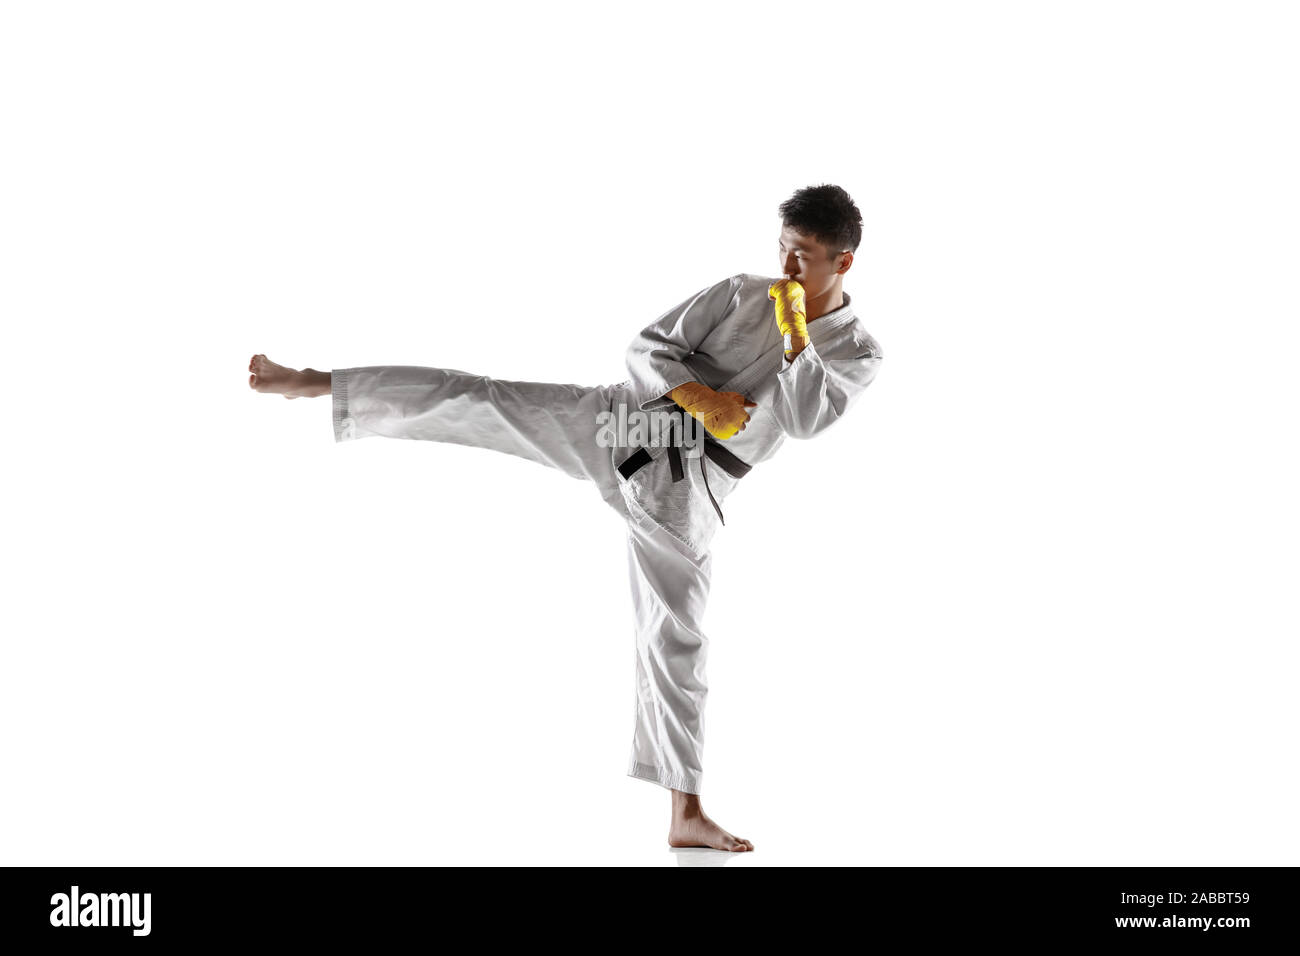 korean taekwondo belts